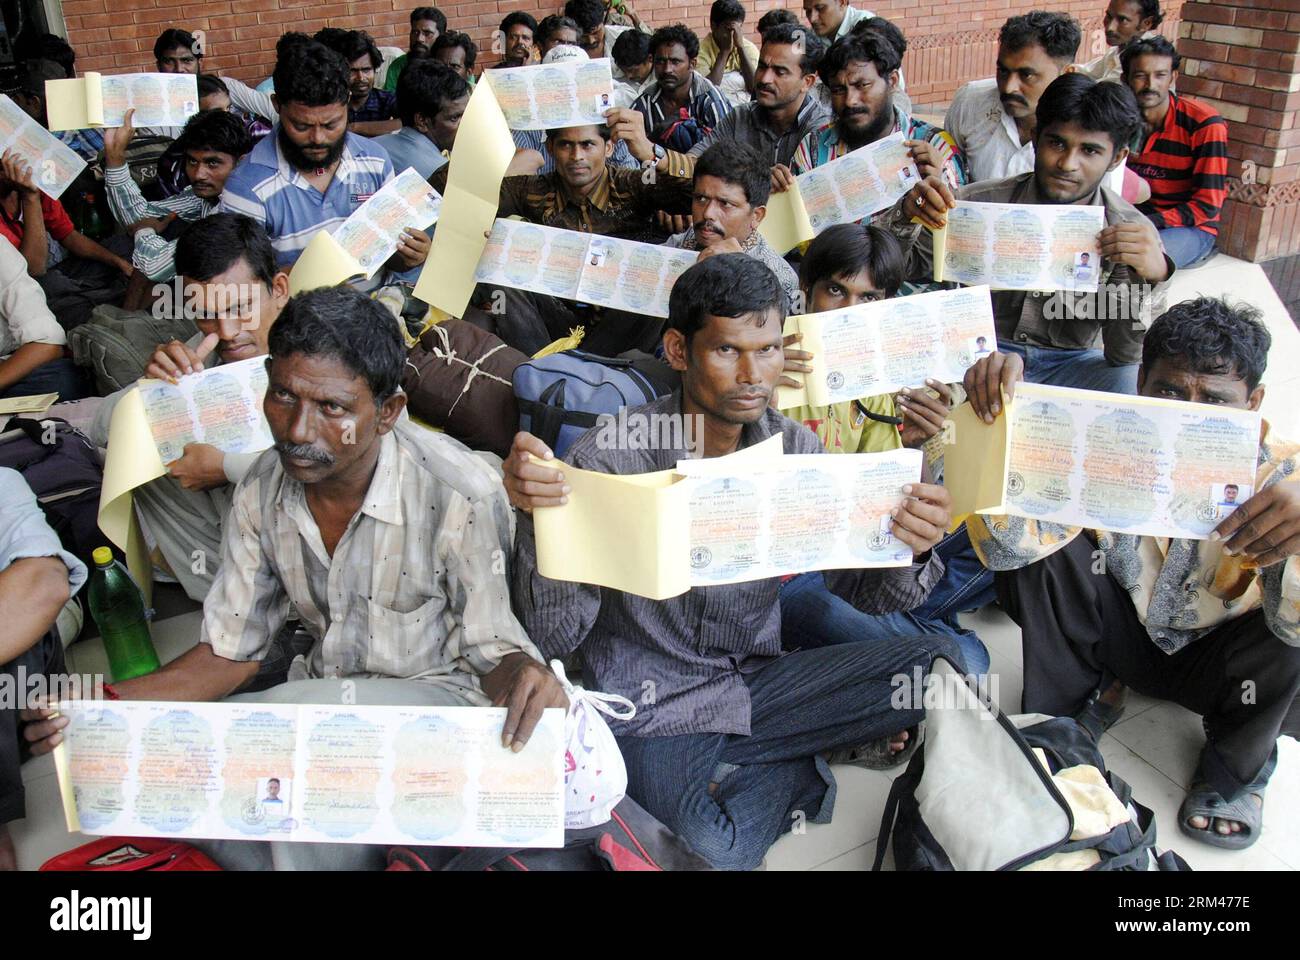 Bildnummer: 60388750 Datum: 24.08.2013 Copyright: imago/Xinhua LAHORE, 24. August 2013 (Xinhua) -- freigelassene indische Gefangene zeigen ihre Dokumente, während sie auf die Überquerung der Wagah-Grenze im östlichen pakistanischen Lahore am 24. August 2013 warten. Pakistan hat am Samstag 337 indische Gefangene freigelassen, die meisten von ihnen Fischer, als Wohlwollen-Geste, berichteten lokale Medien. (Xinhua/Sajjad) PAKISTAN-LAHORE-INDIANER-GEFANGENE PUBLICATIONxNOTxINxCHN Gesellschaft Freilassung GEFANGENE Häftlinge x0x xst Erstauflage 2013 quer 60388750 Datum 24 08 2013 Copyright Imago XINHUA Lahore 24. August 2013 XINHUA entließ indischen Gefangenen Stockfoto